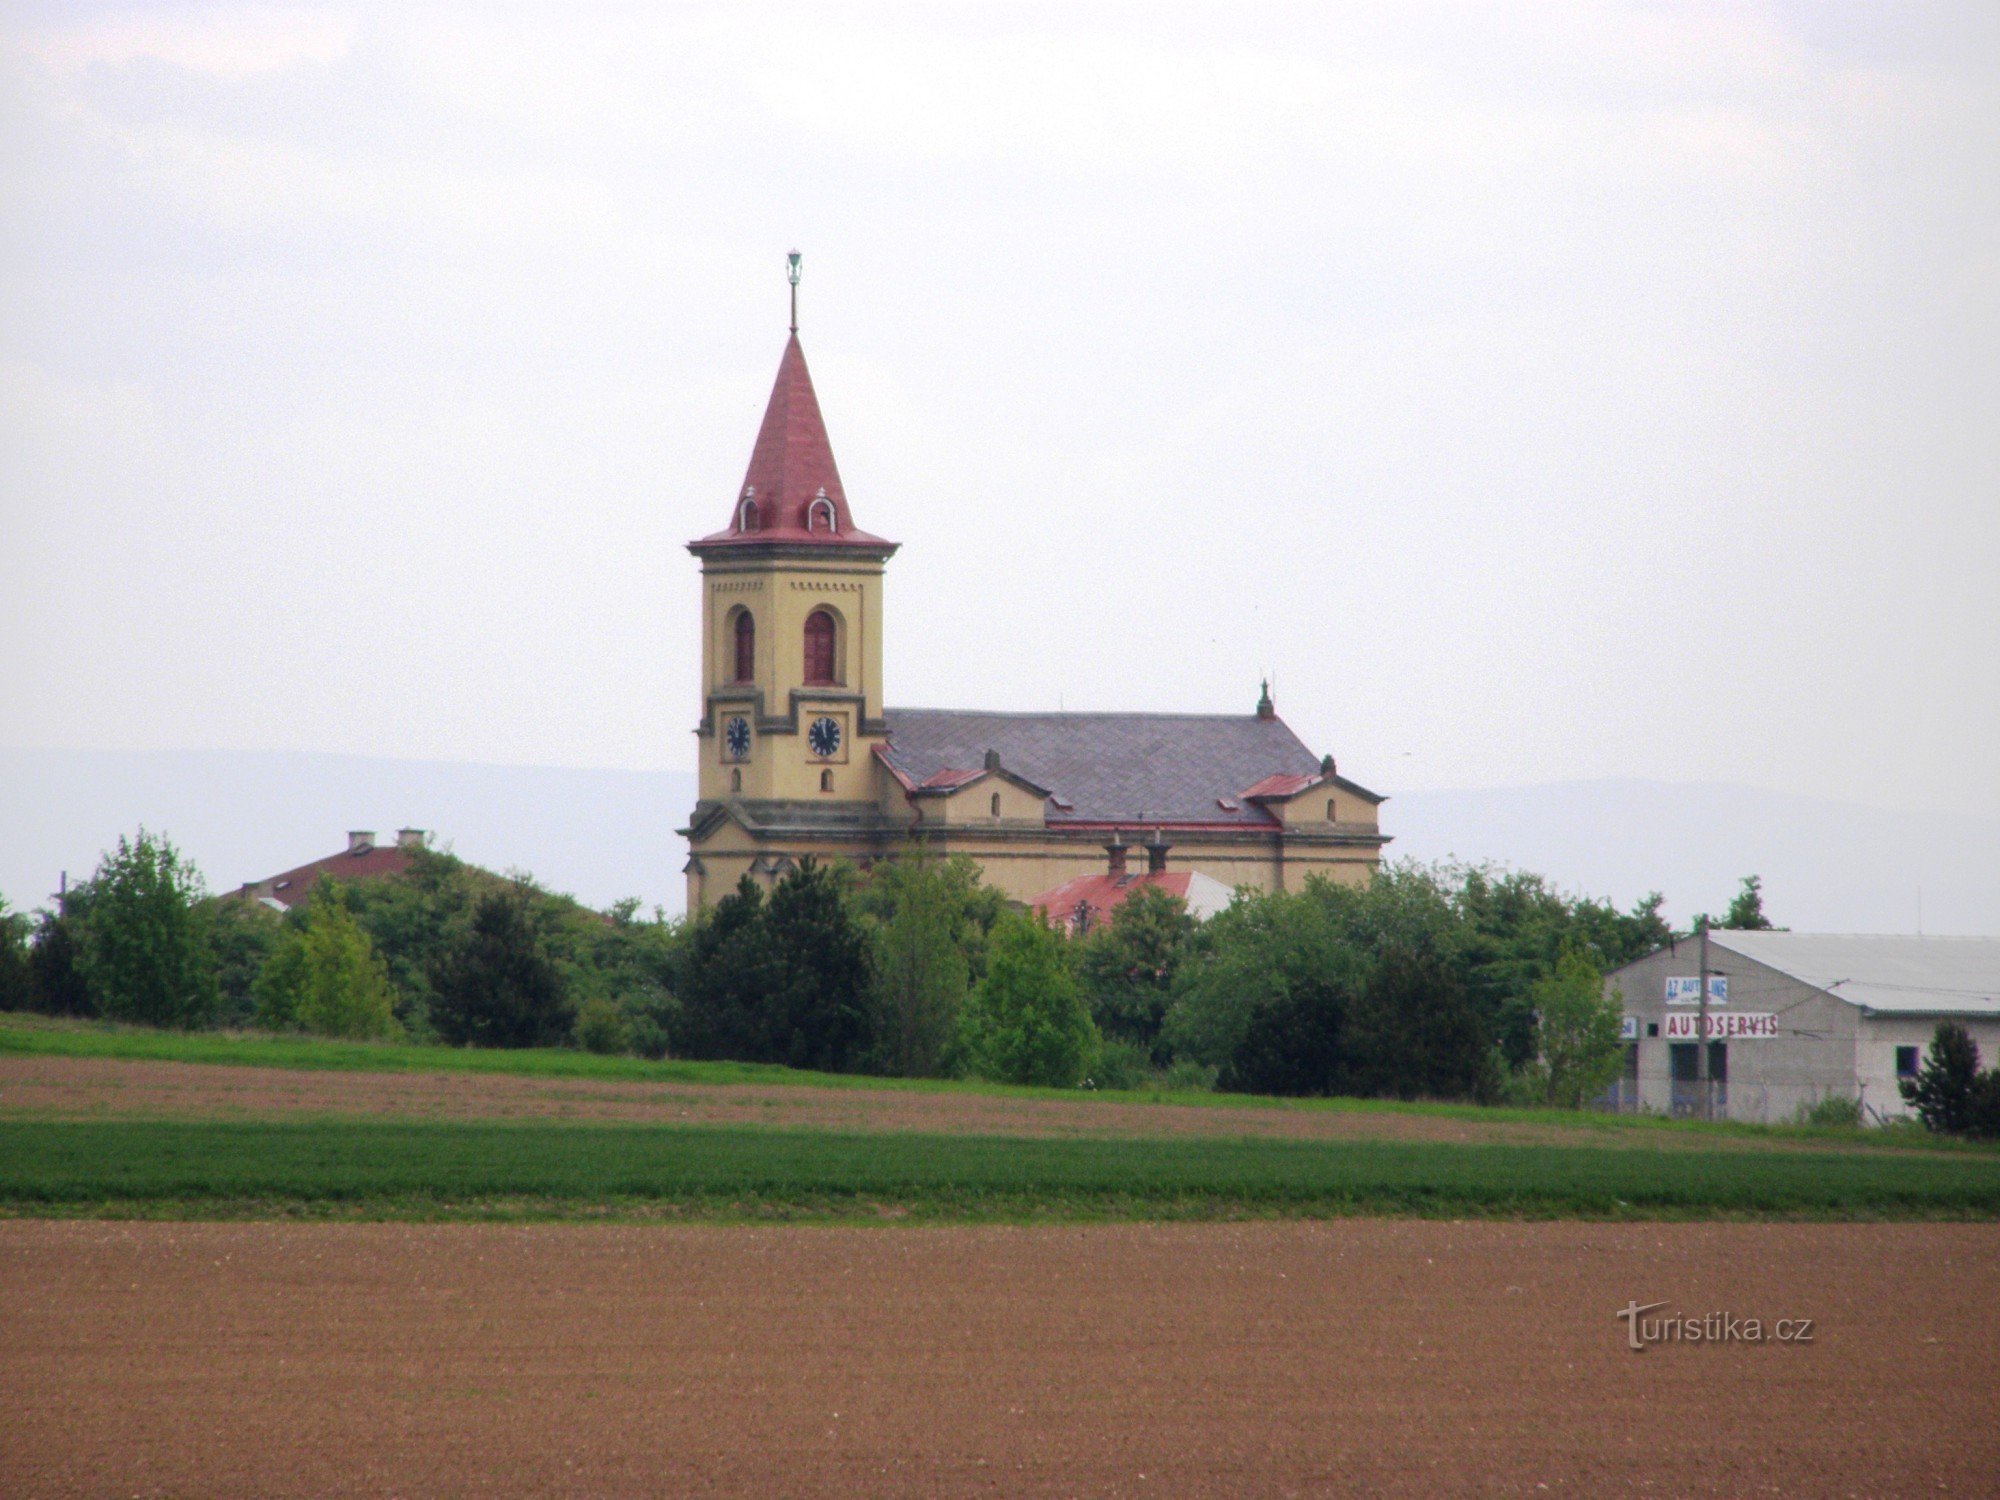 Semonice - Church of the Czech Brethren Evangelical Church